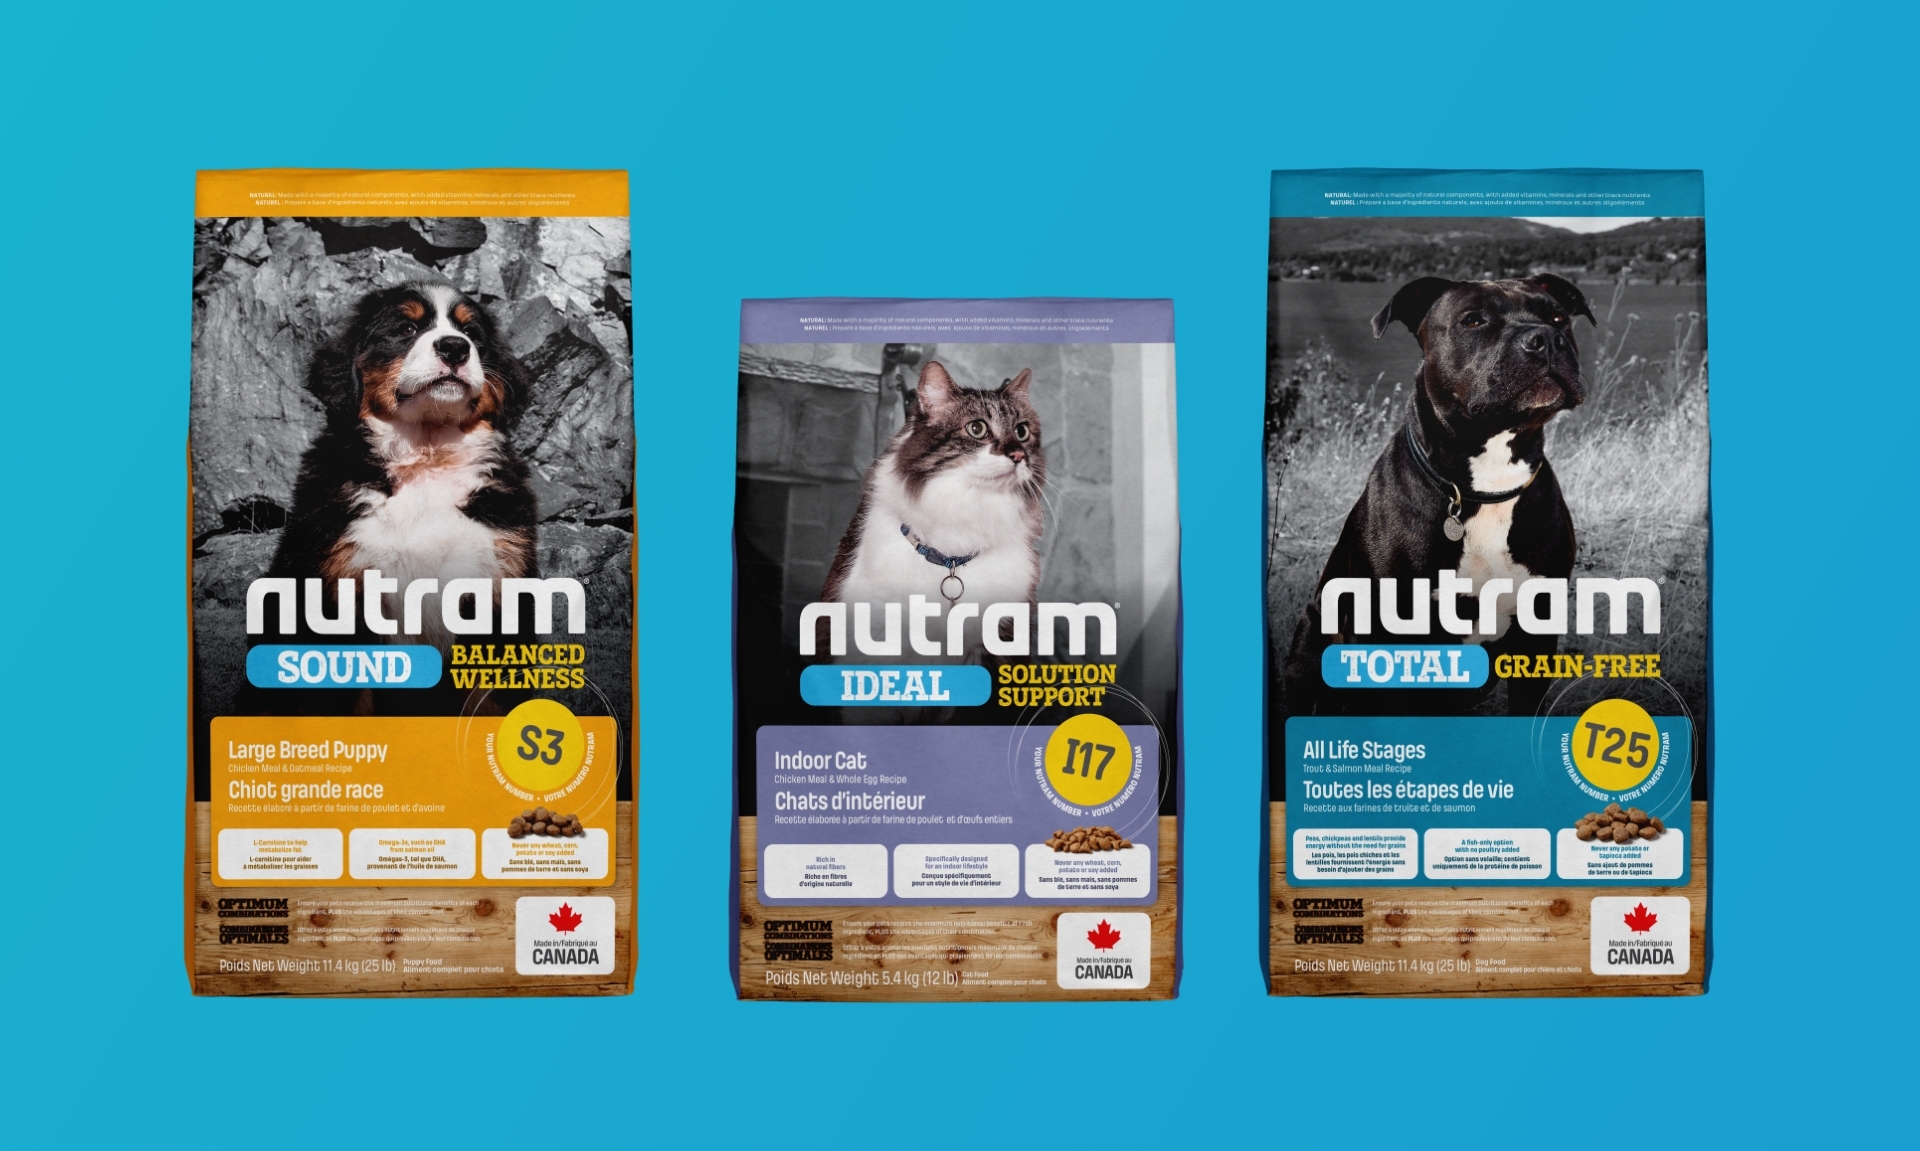 Nutram pet food product packaging designs